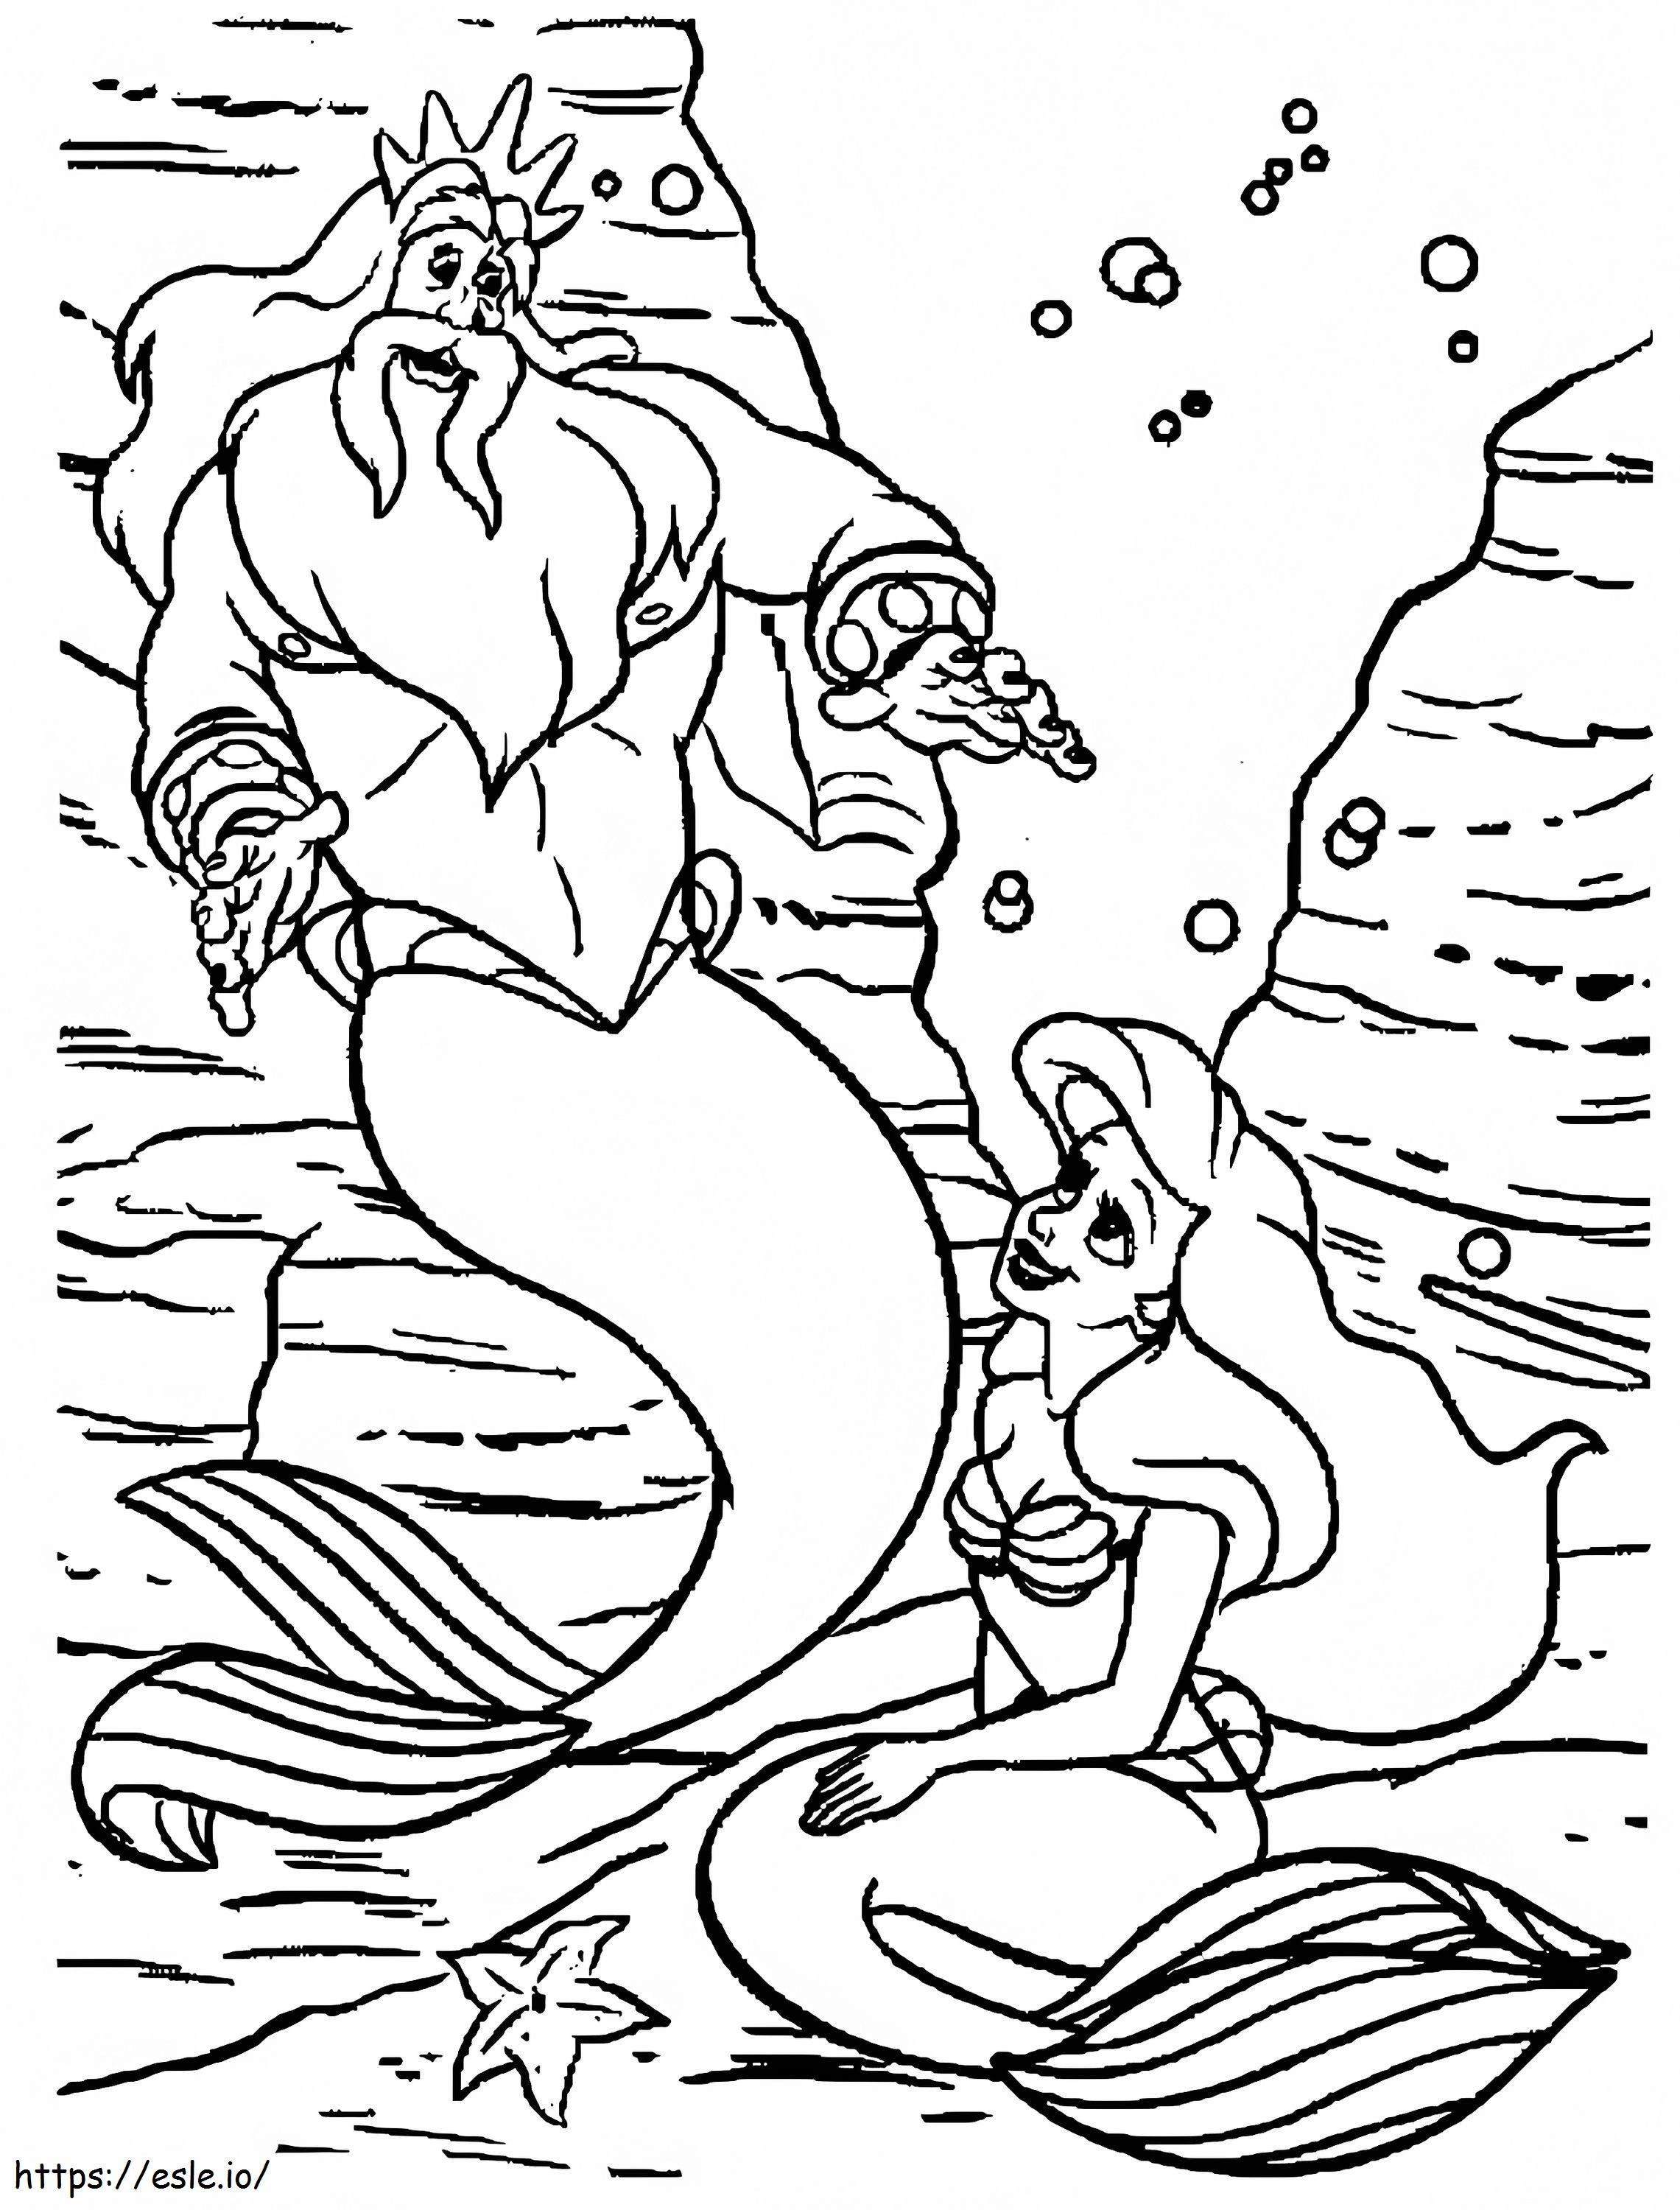 Meerjungfrau und Vater zeichnen ausmalbilder